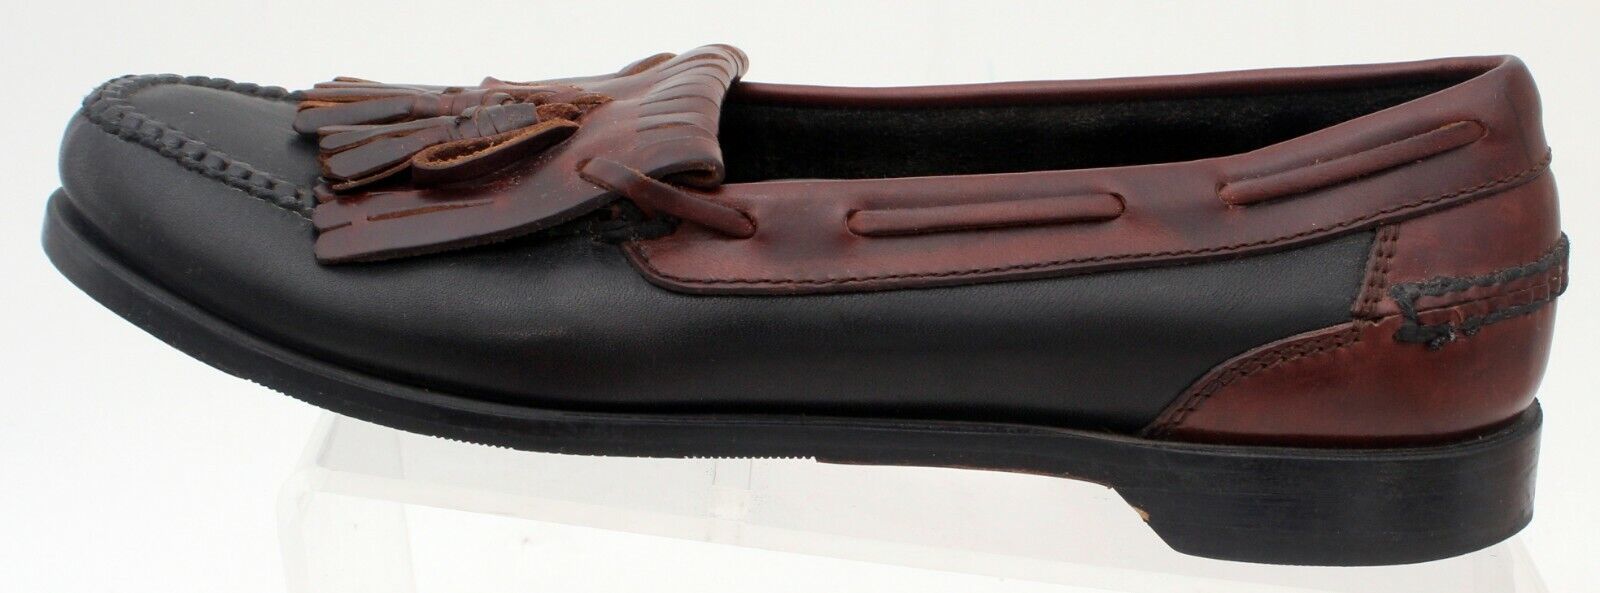 Primary image for Johnston & Murphy Shoes Mens Size 9 Black Brown Loafer  Kilt Tassels 20-6111